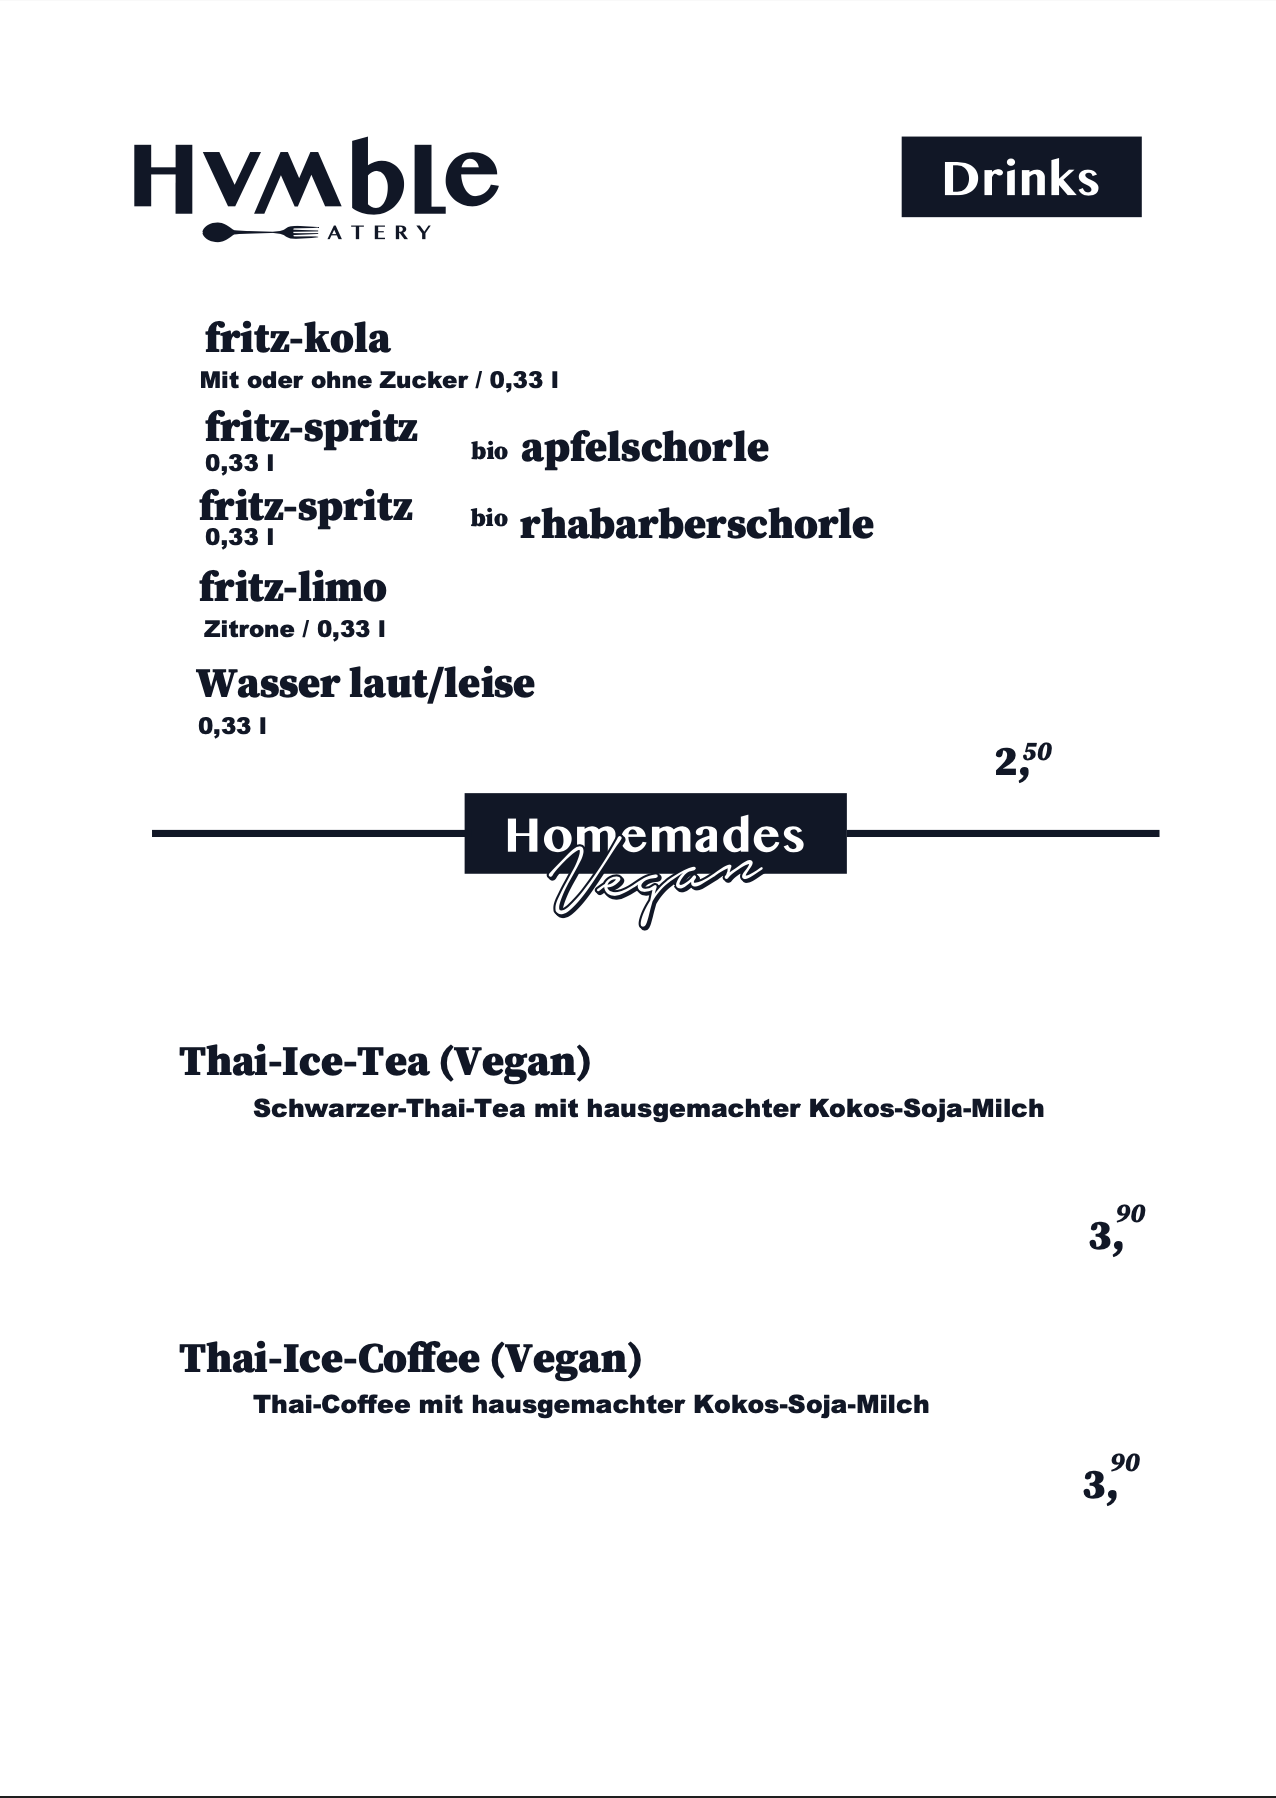 Humble Berlin Speisekarte 3 — Getränke, Vegan Thai-Ice-Coffee, Vegan Thai-Ice-Tea